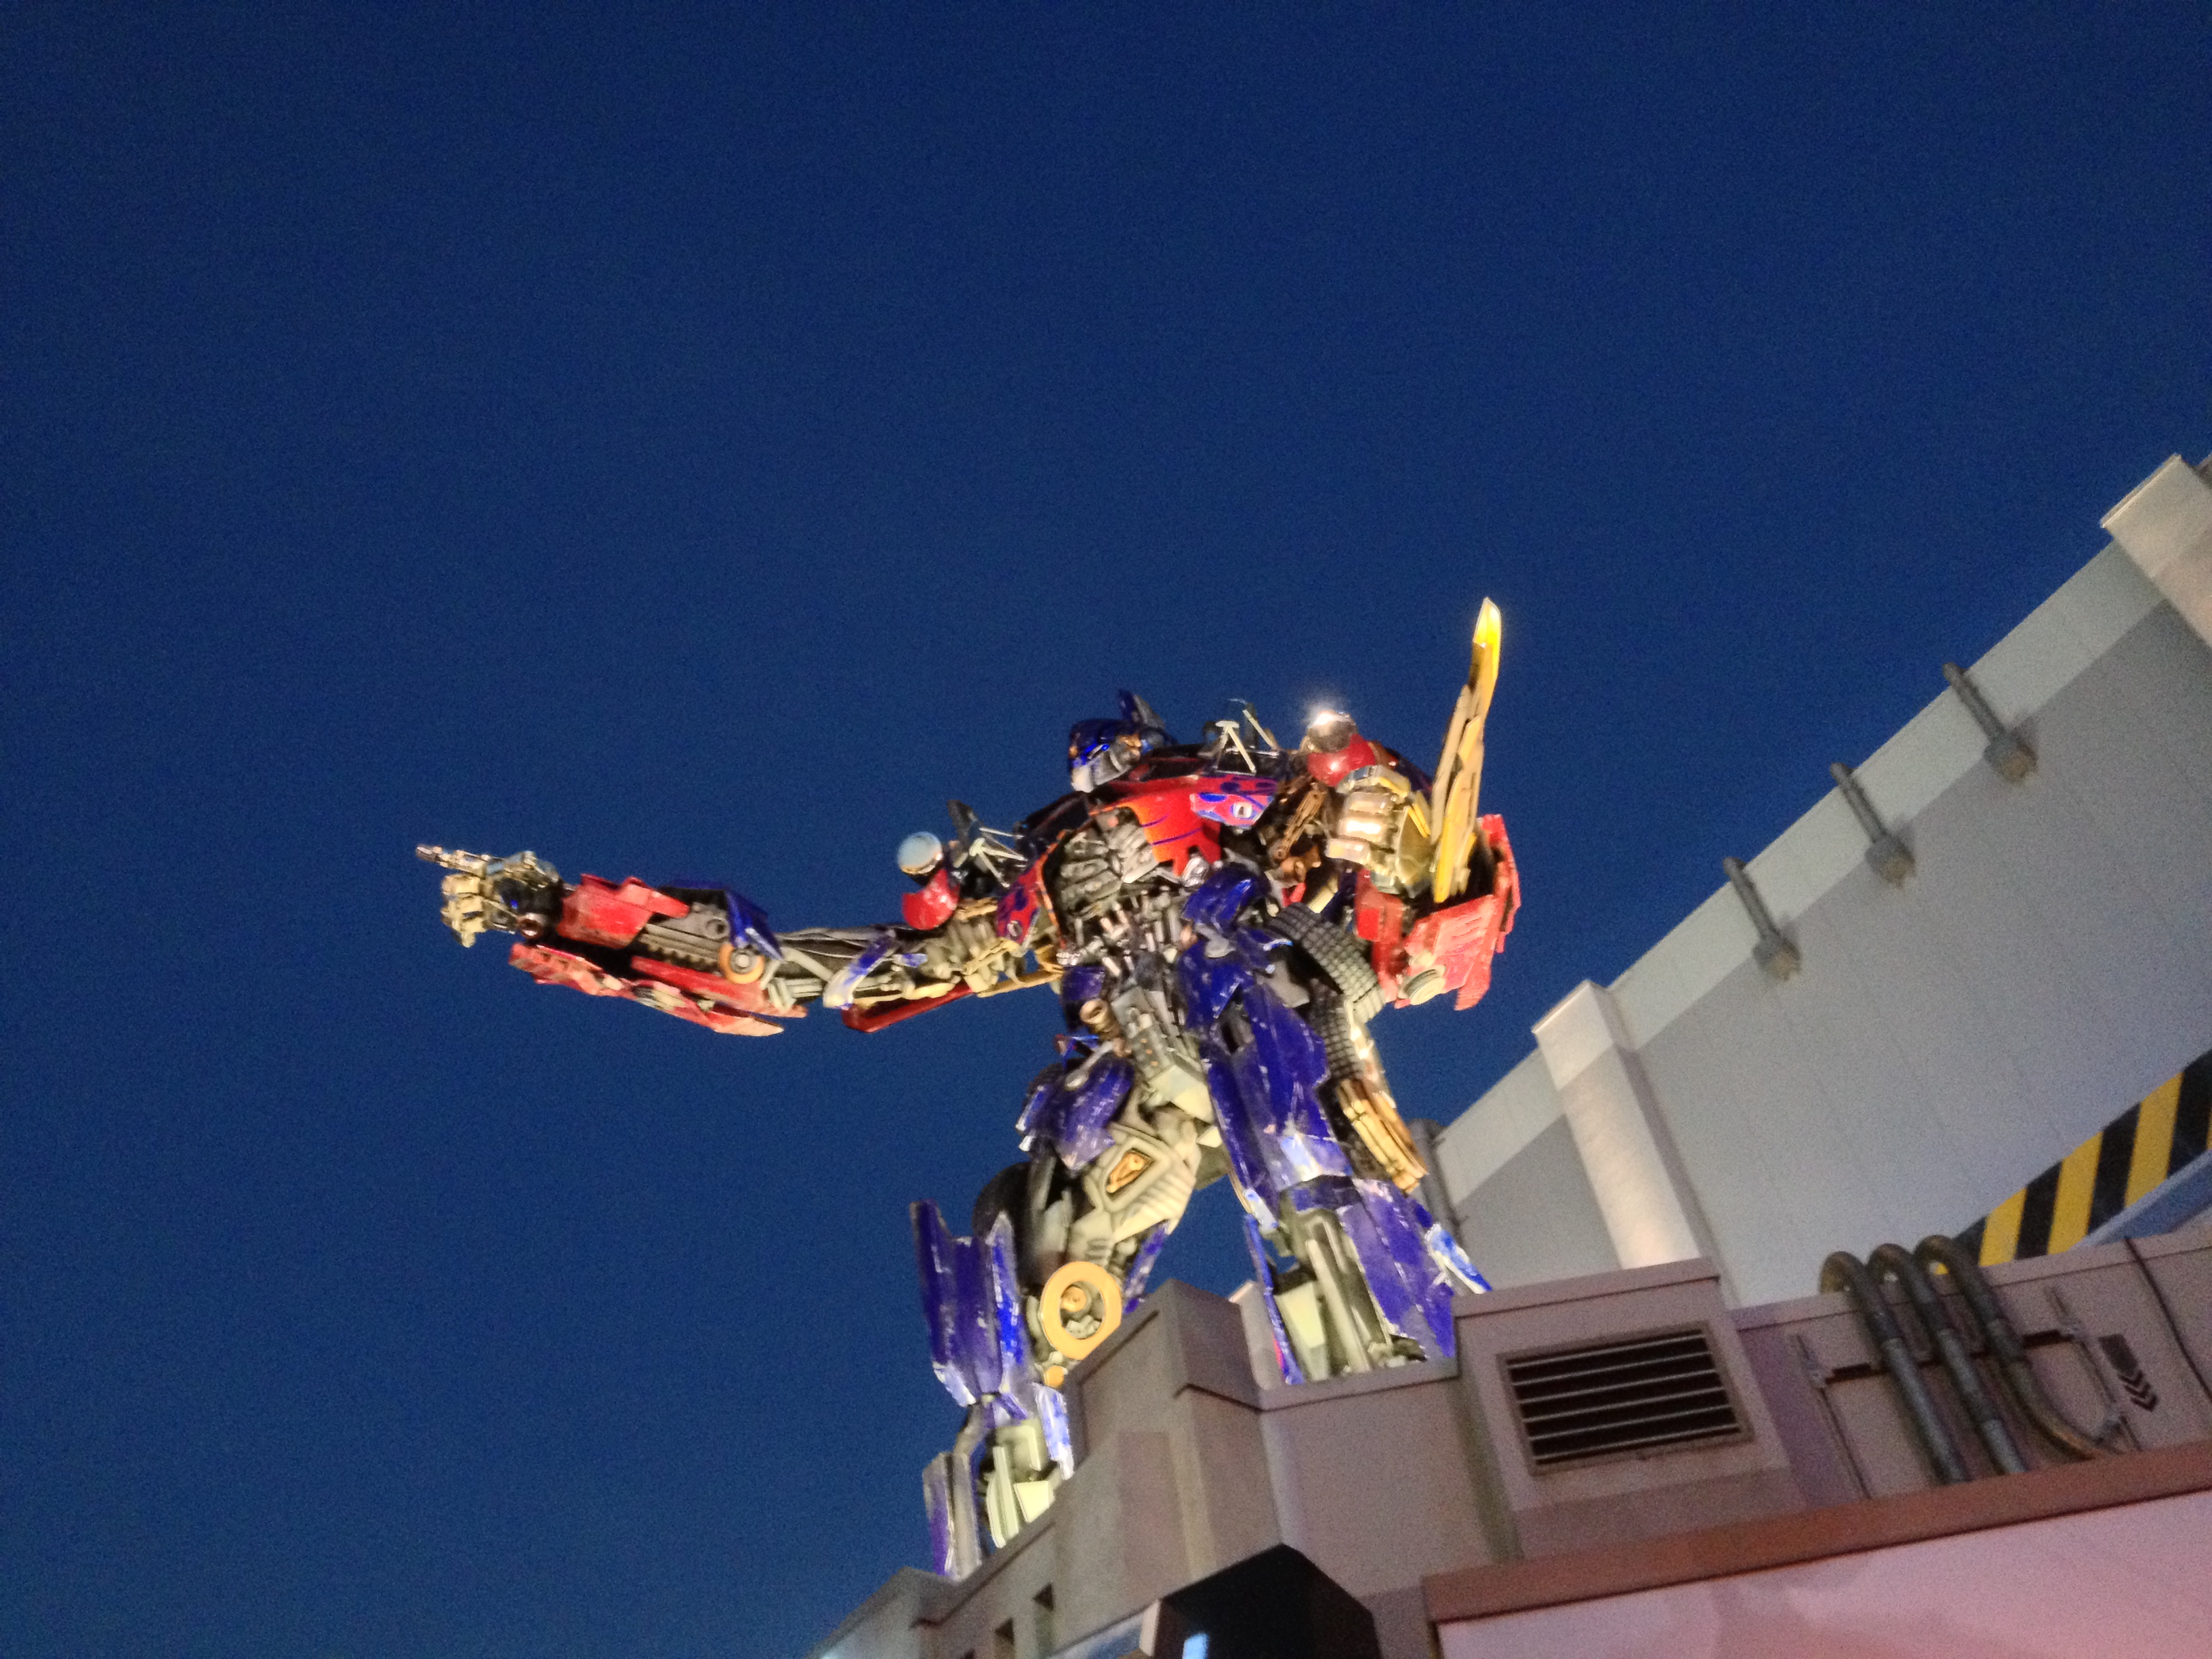 Optimus Prime statue at night